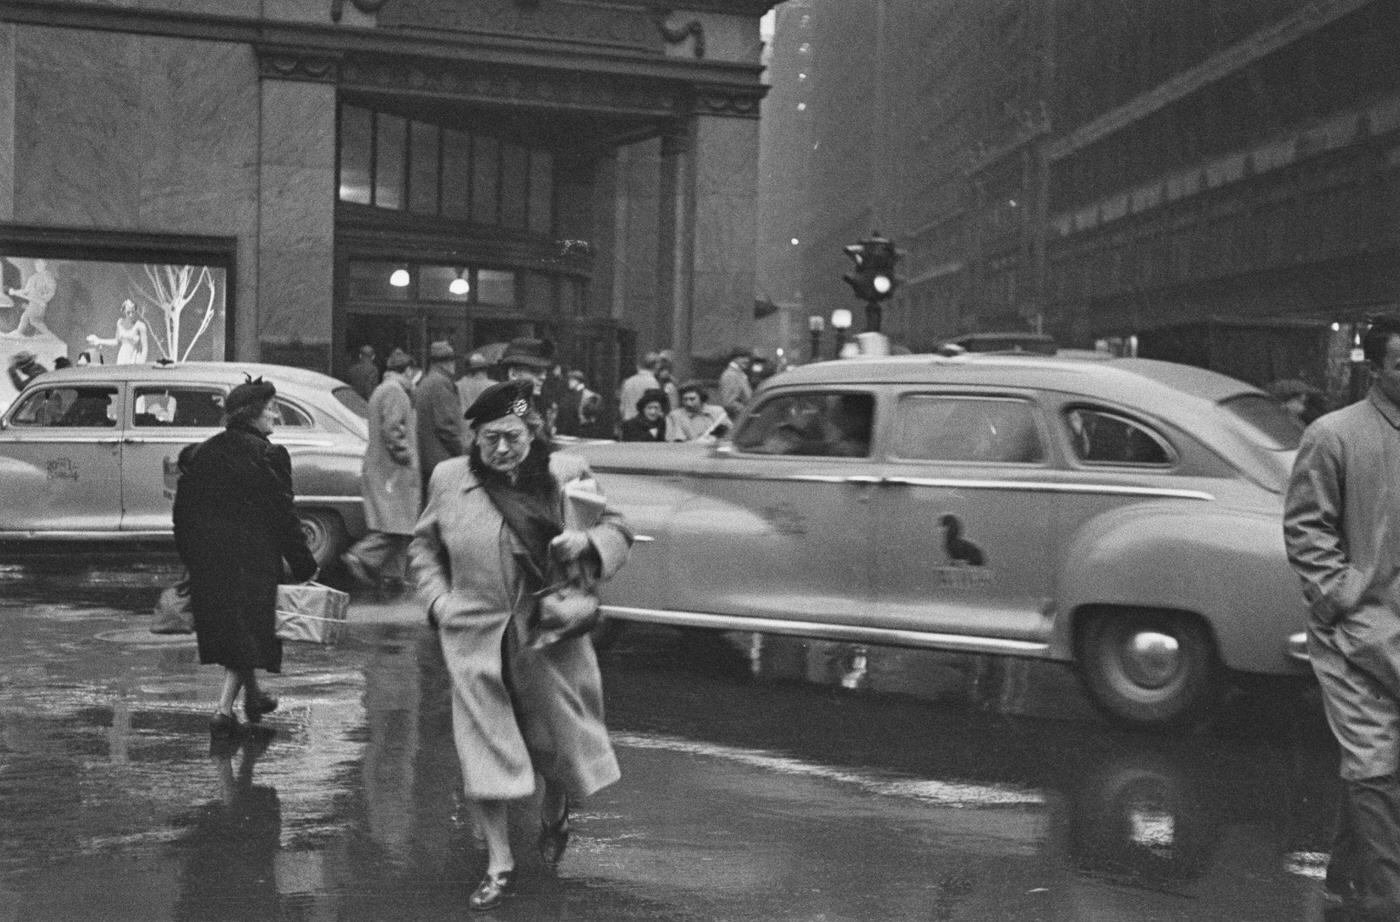 Rainy Day In New York, Manhattan, 1941